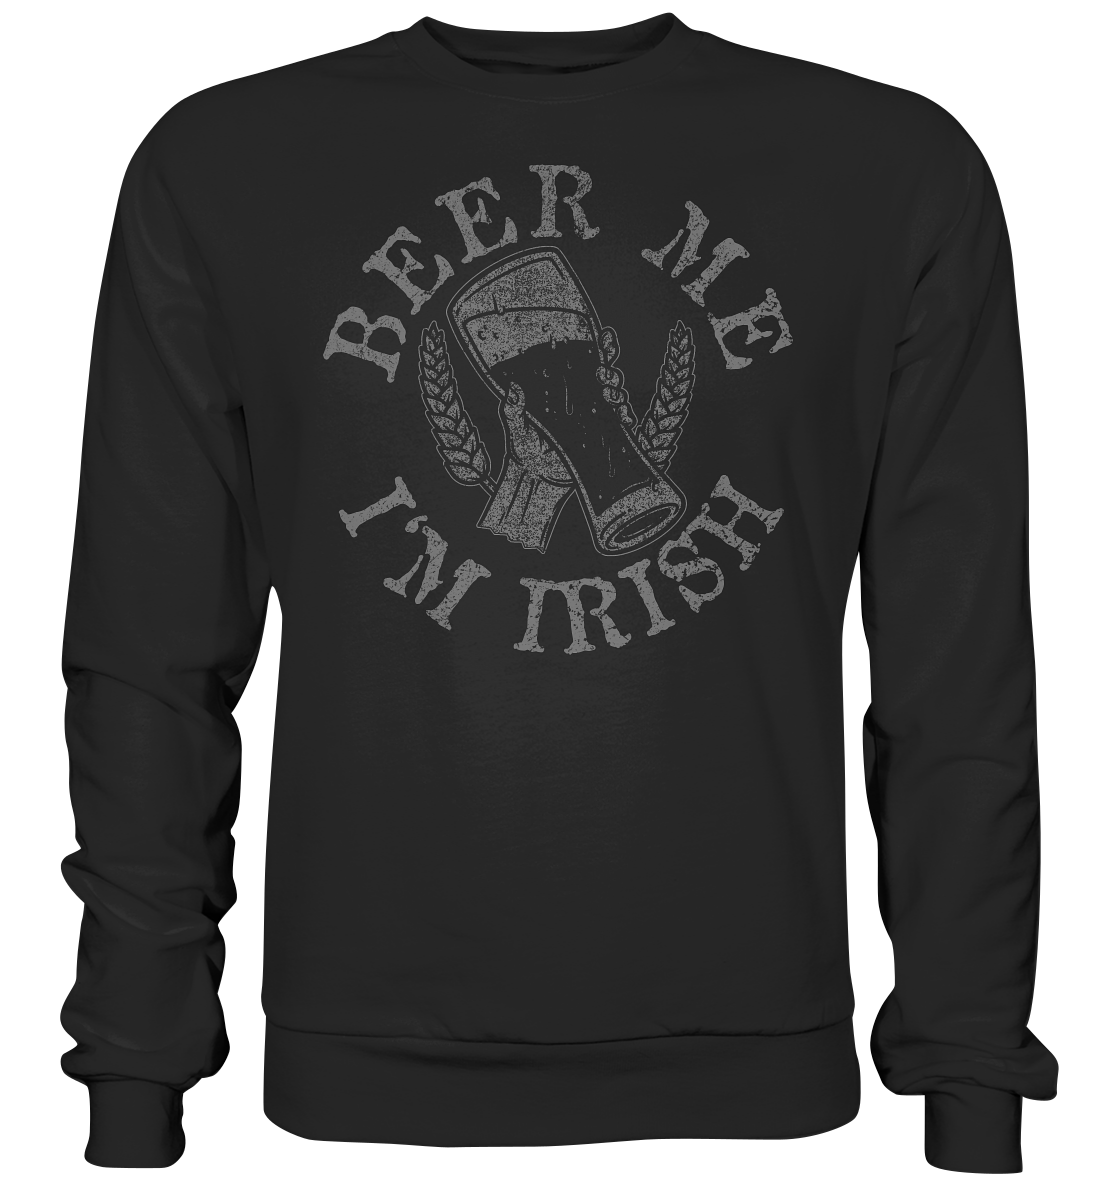 Beer Me "I'm Irish" - Premium Sweatshirt